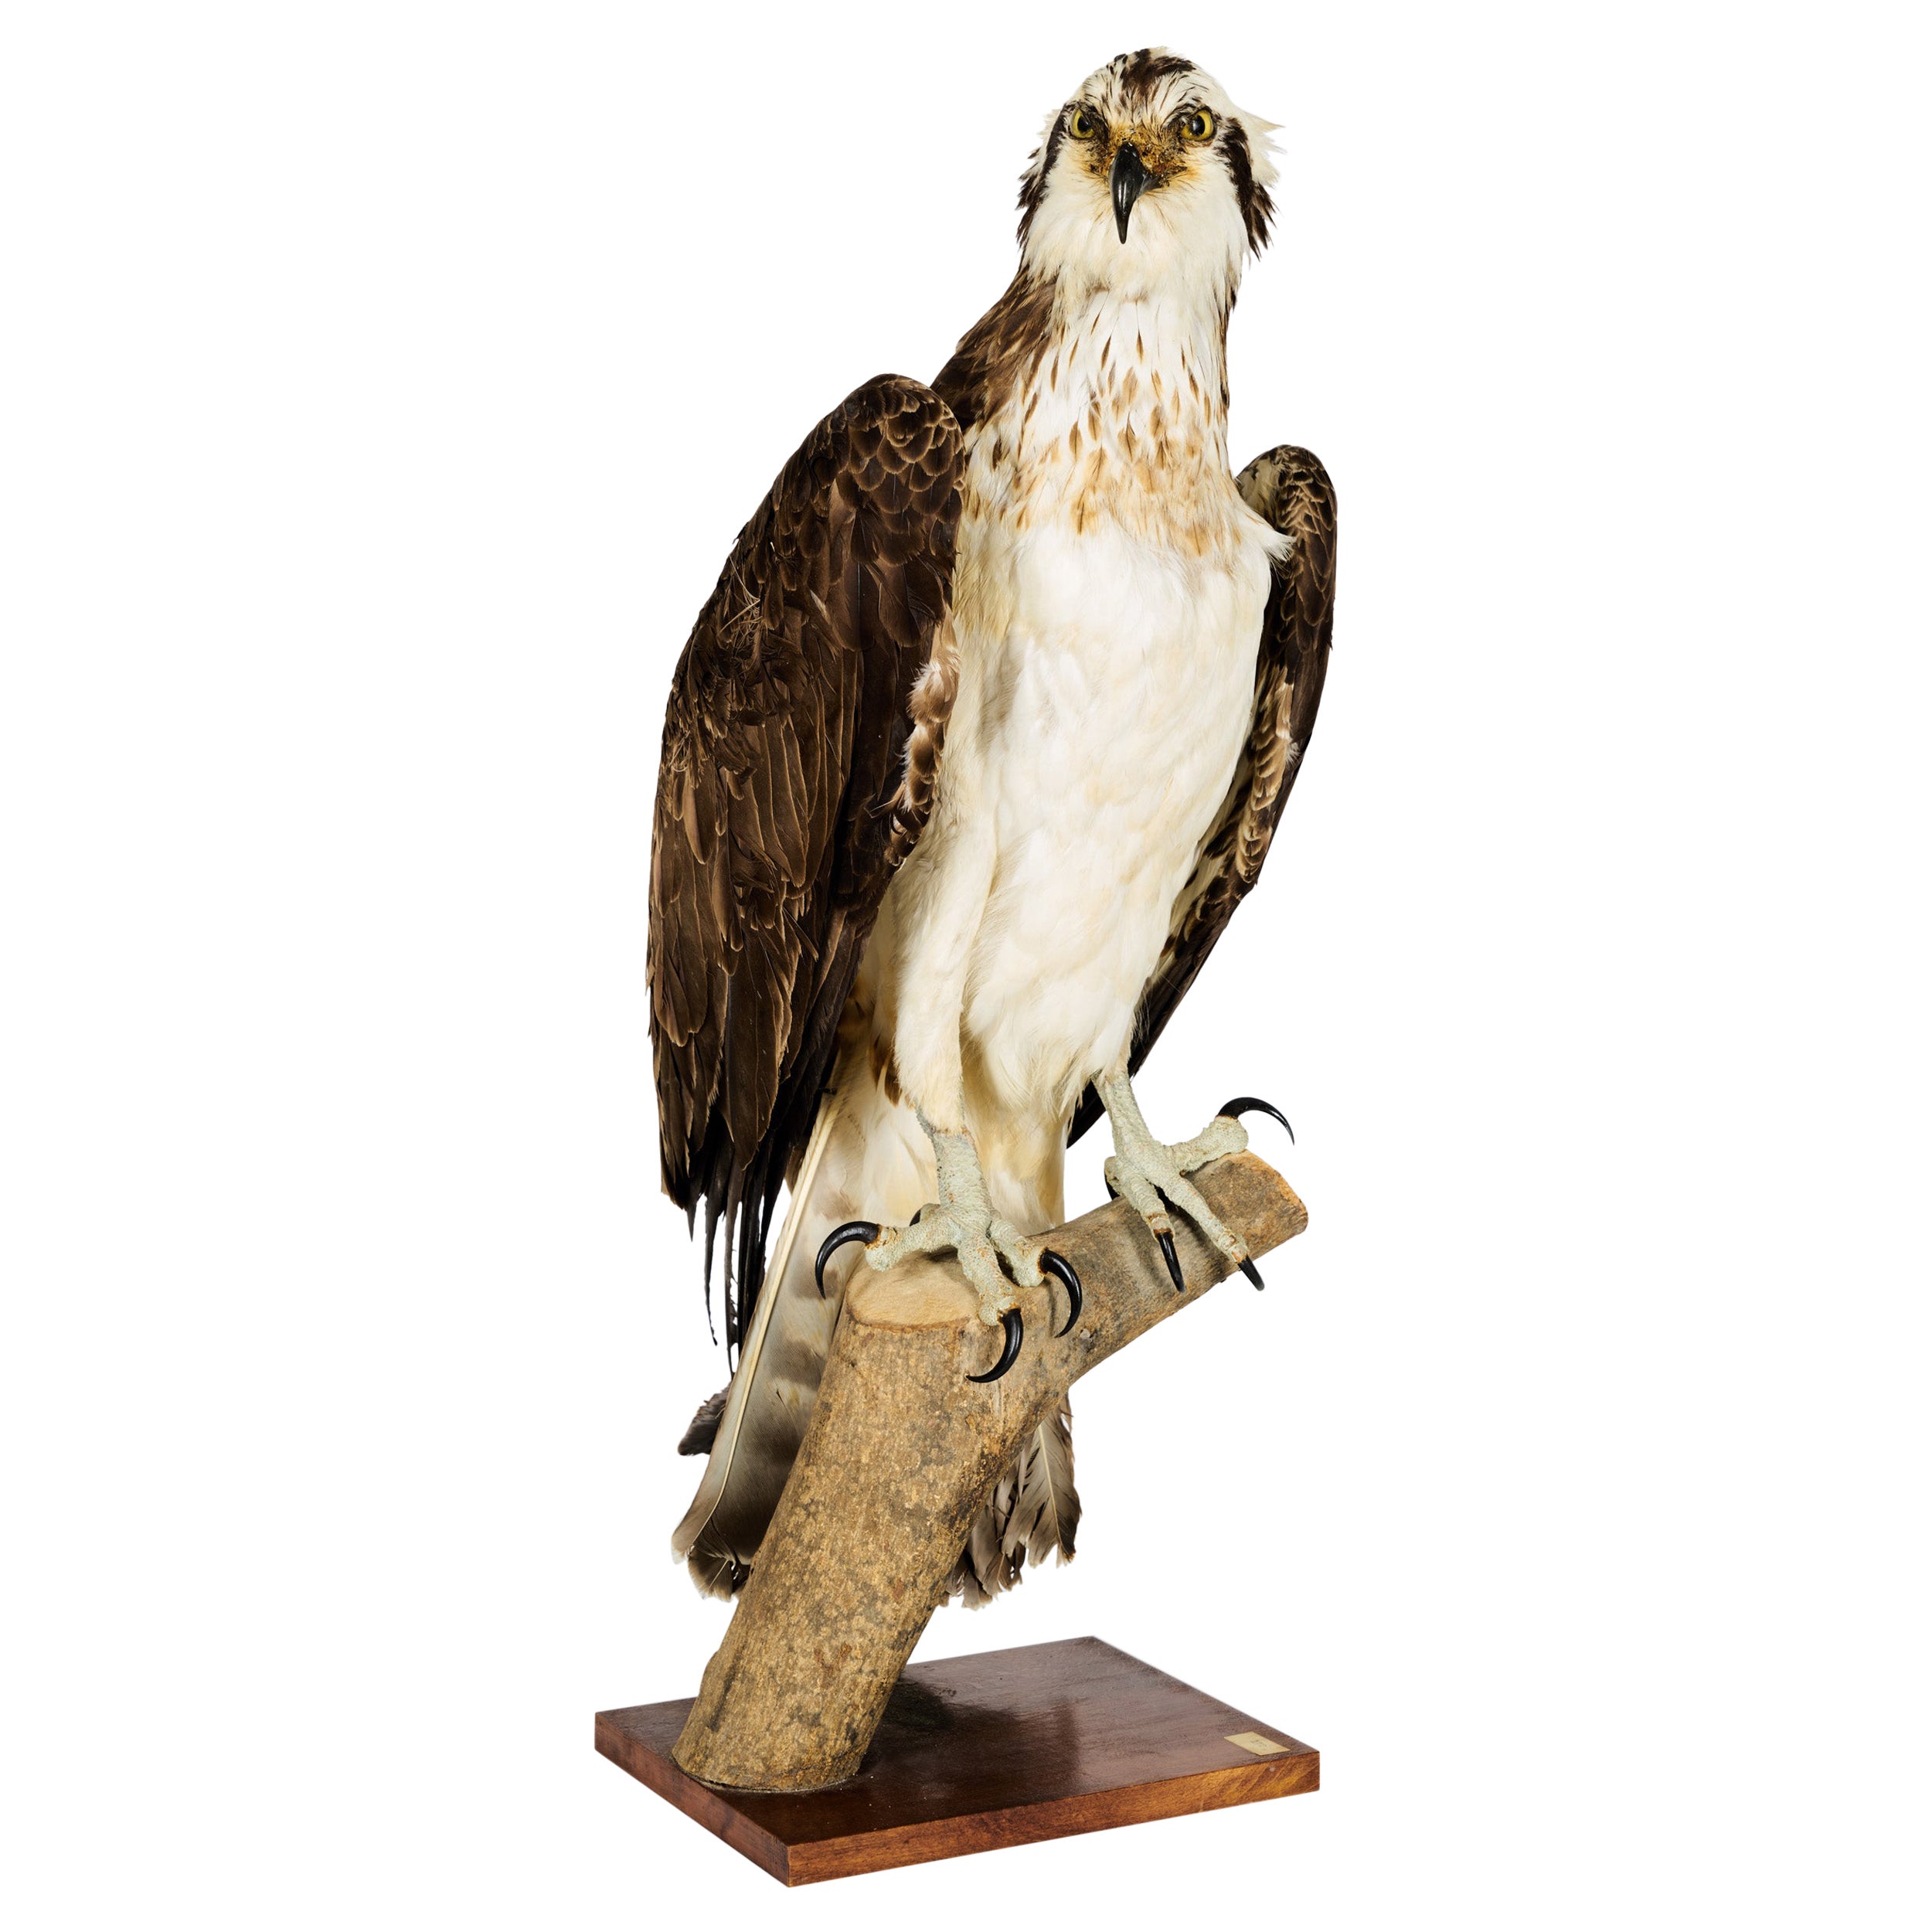 Westerne Osprey or Fish Hawk 'Pandion Haliaetus', Cites II/A dd 10/03/2 For Sale